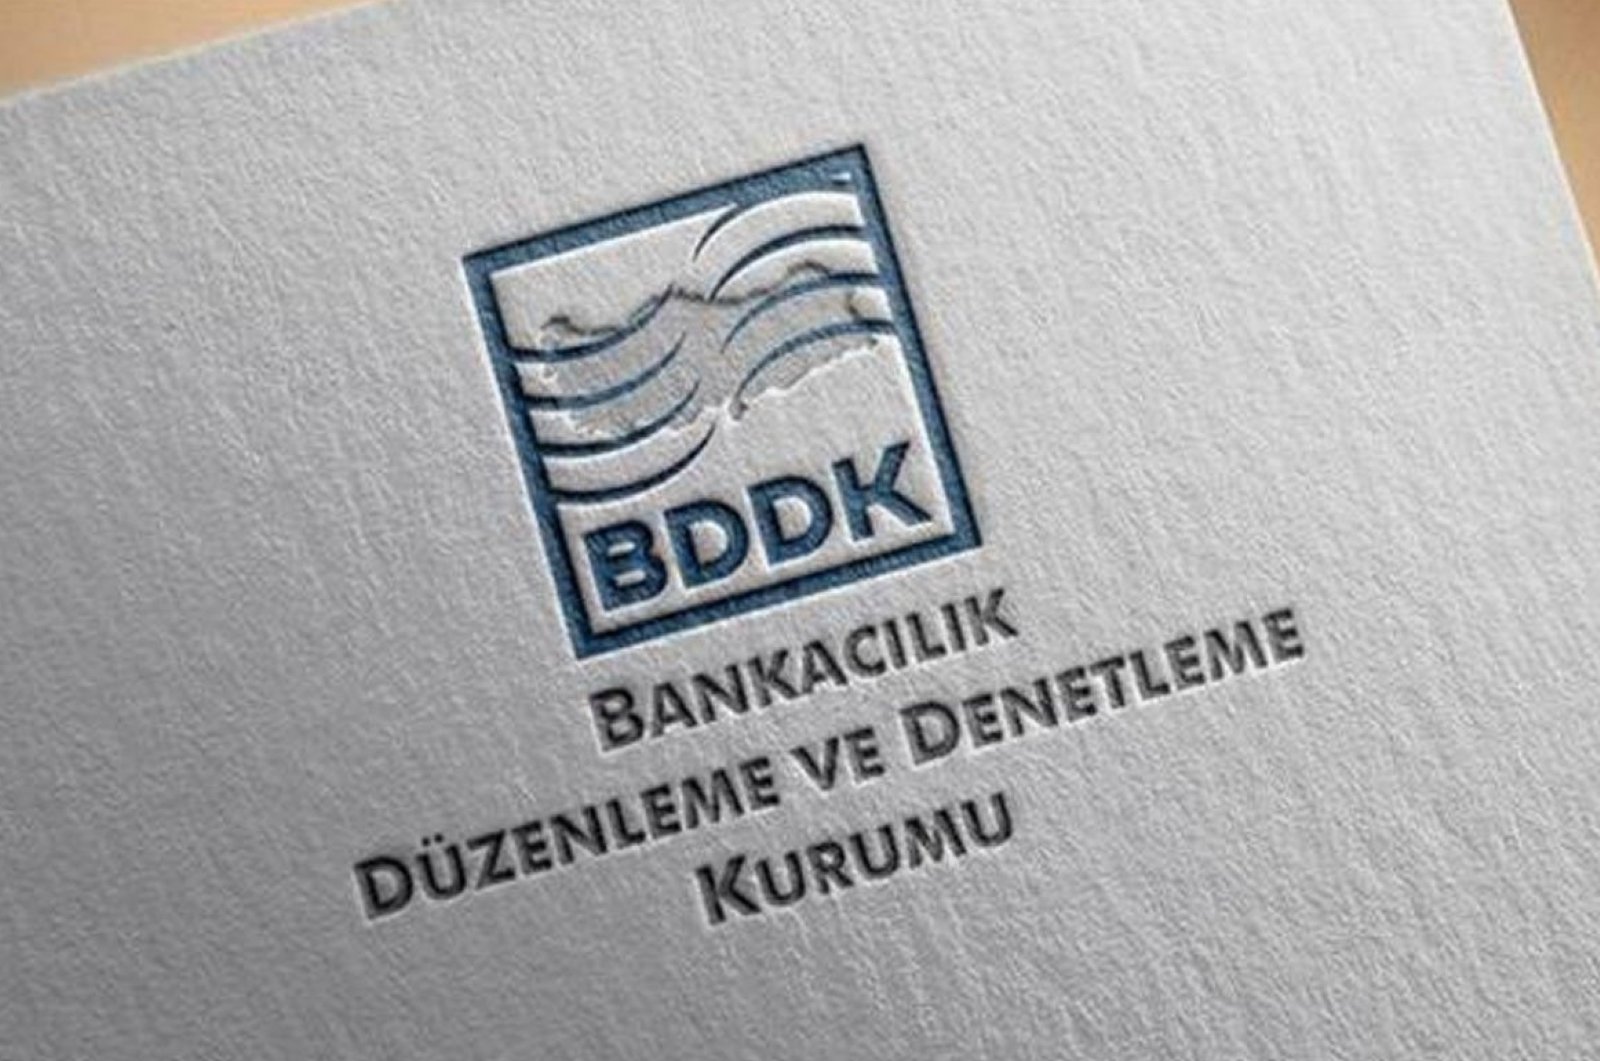 Pengawas Turki mendenda 13 pemberi pinjaman karena audit pinjaman yang tidak tepat